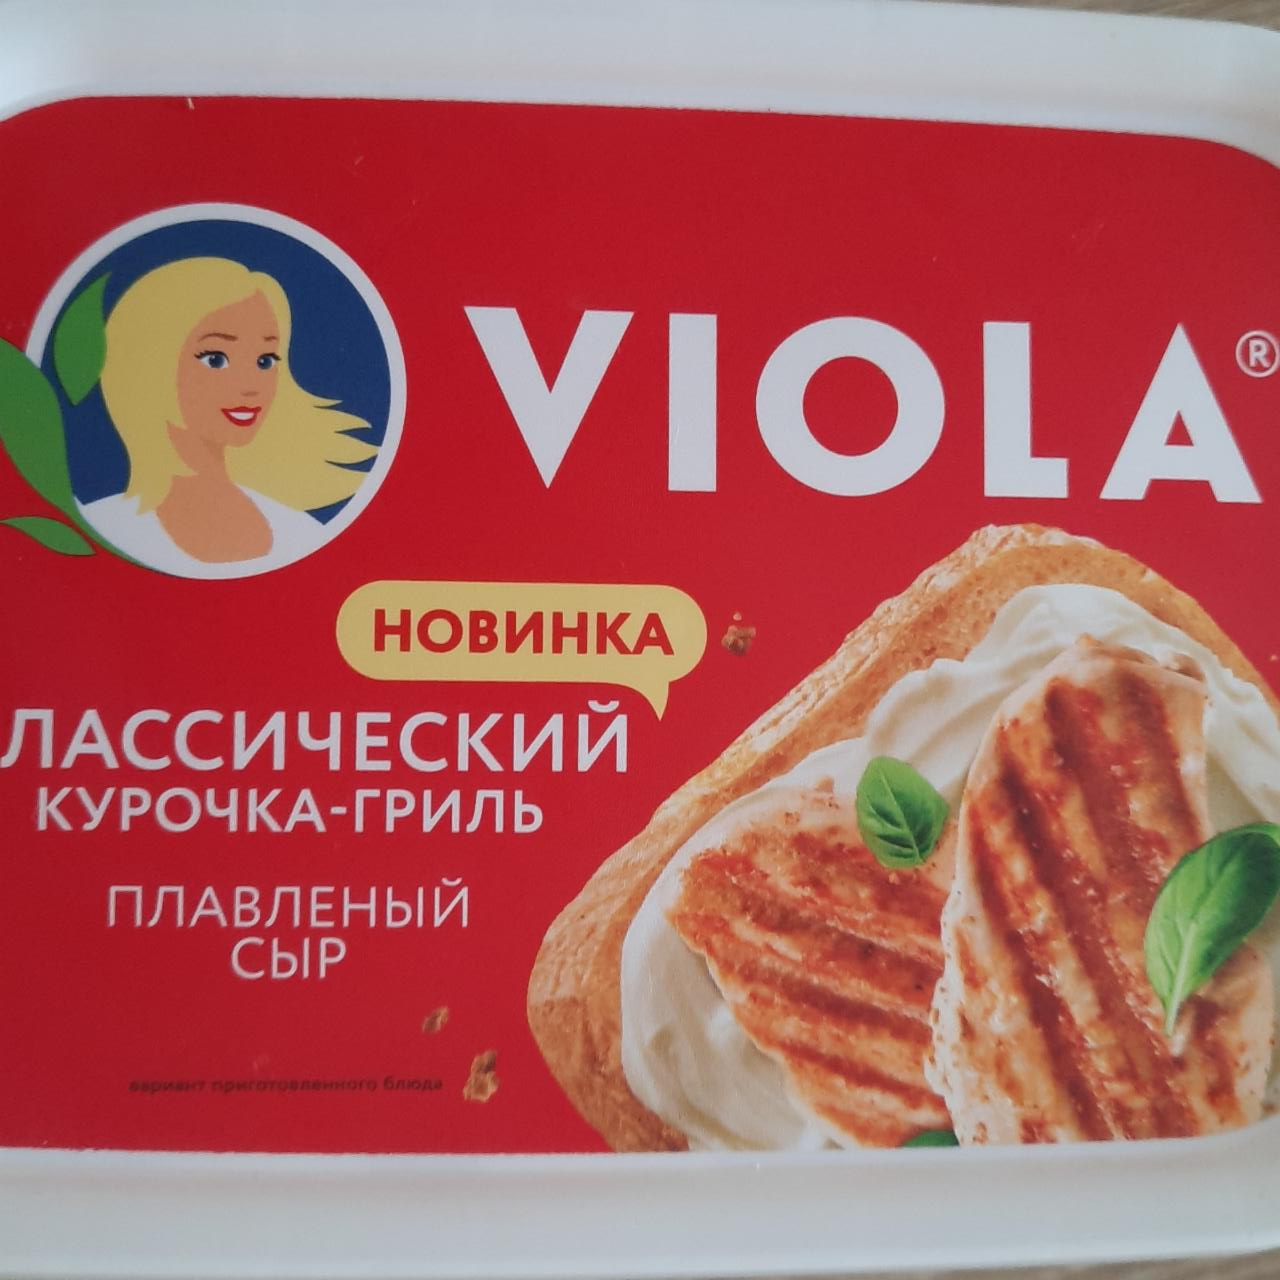 Фото - плавленый сыр Виола курочка-гриль Viola